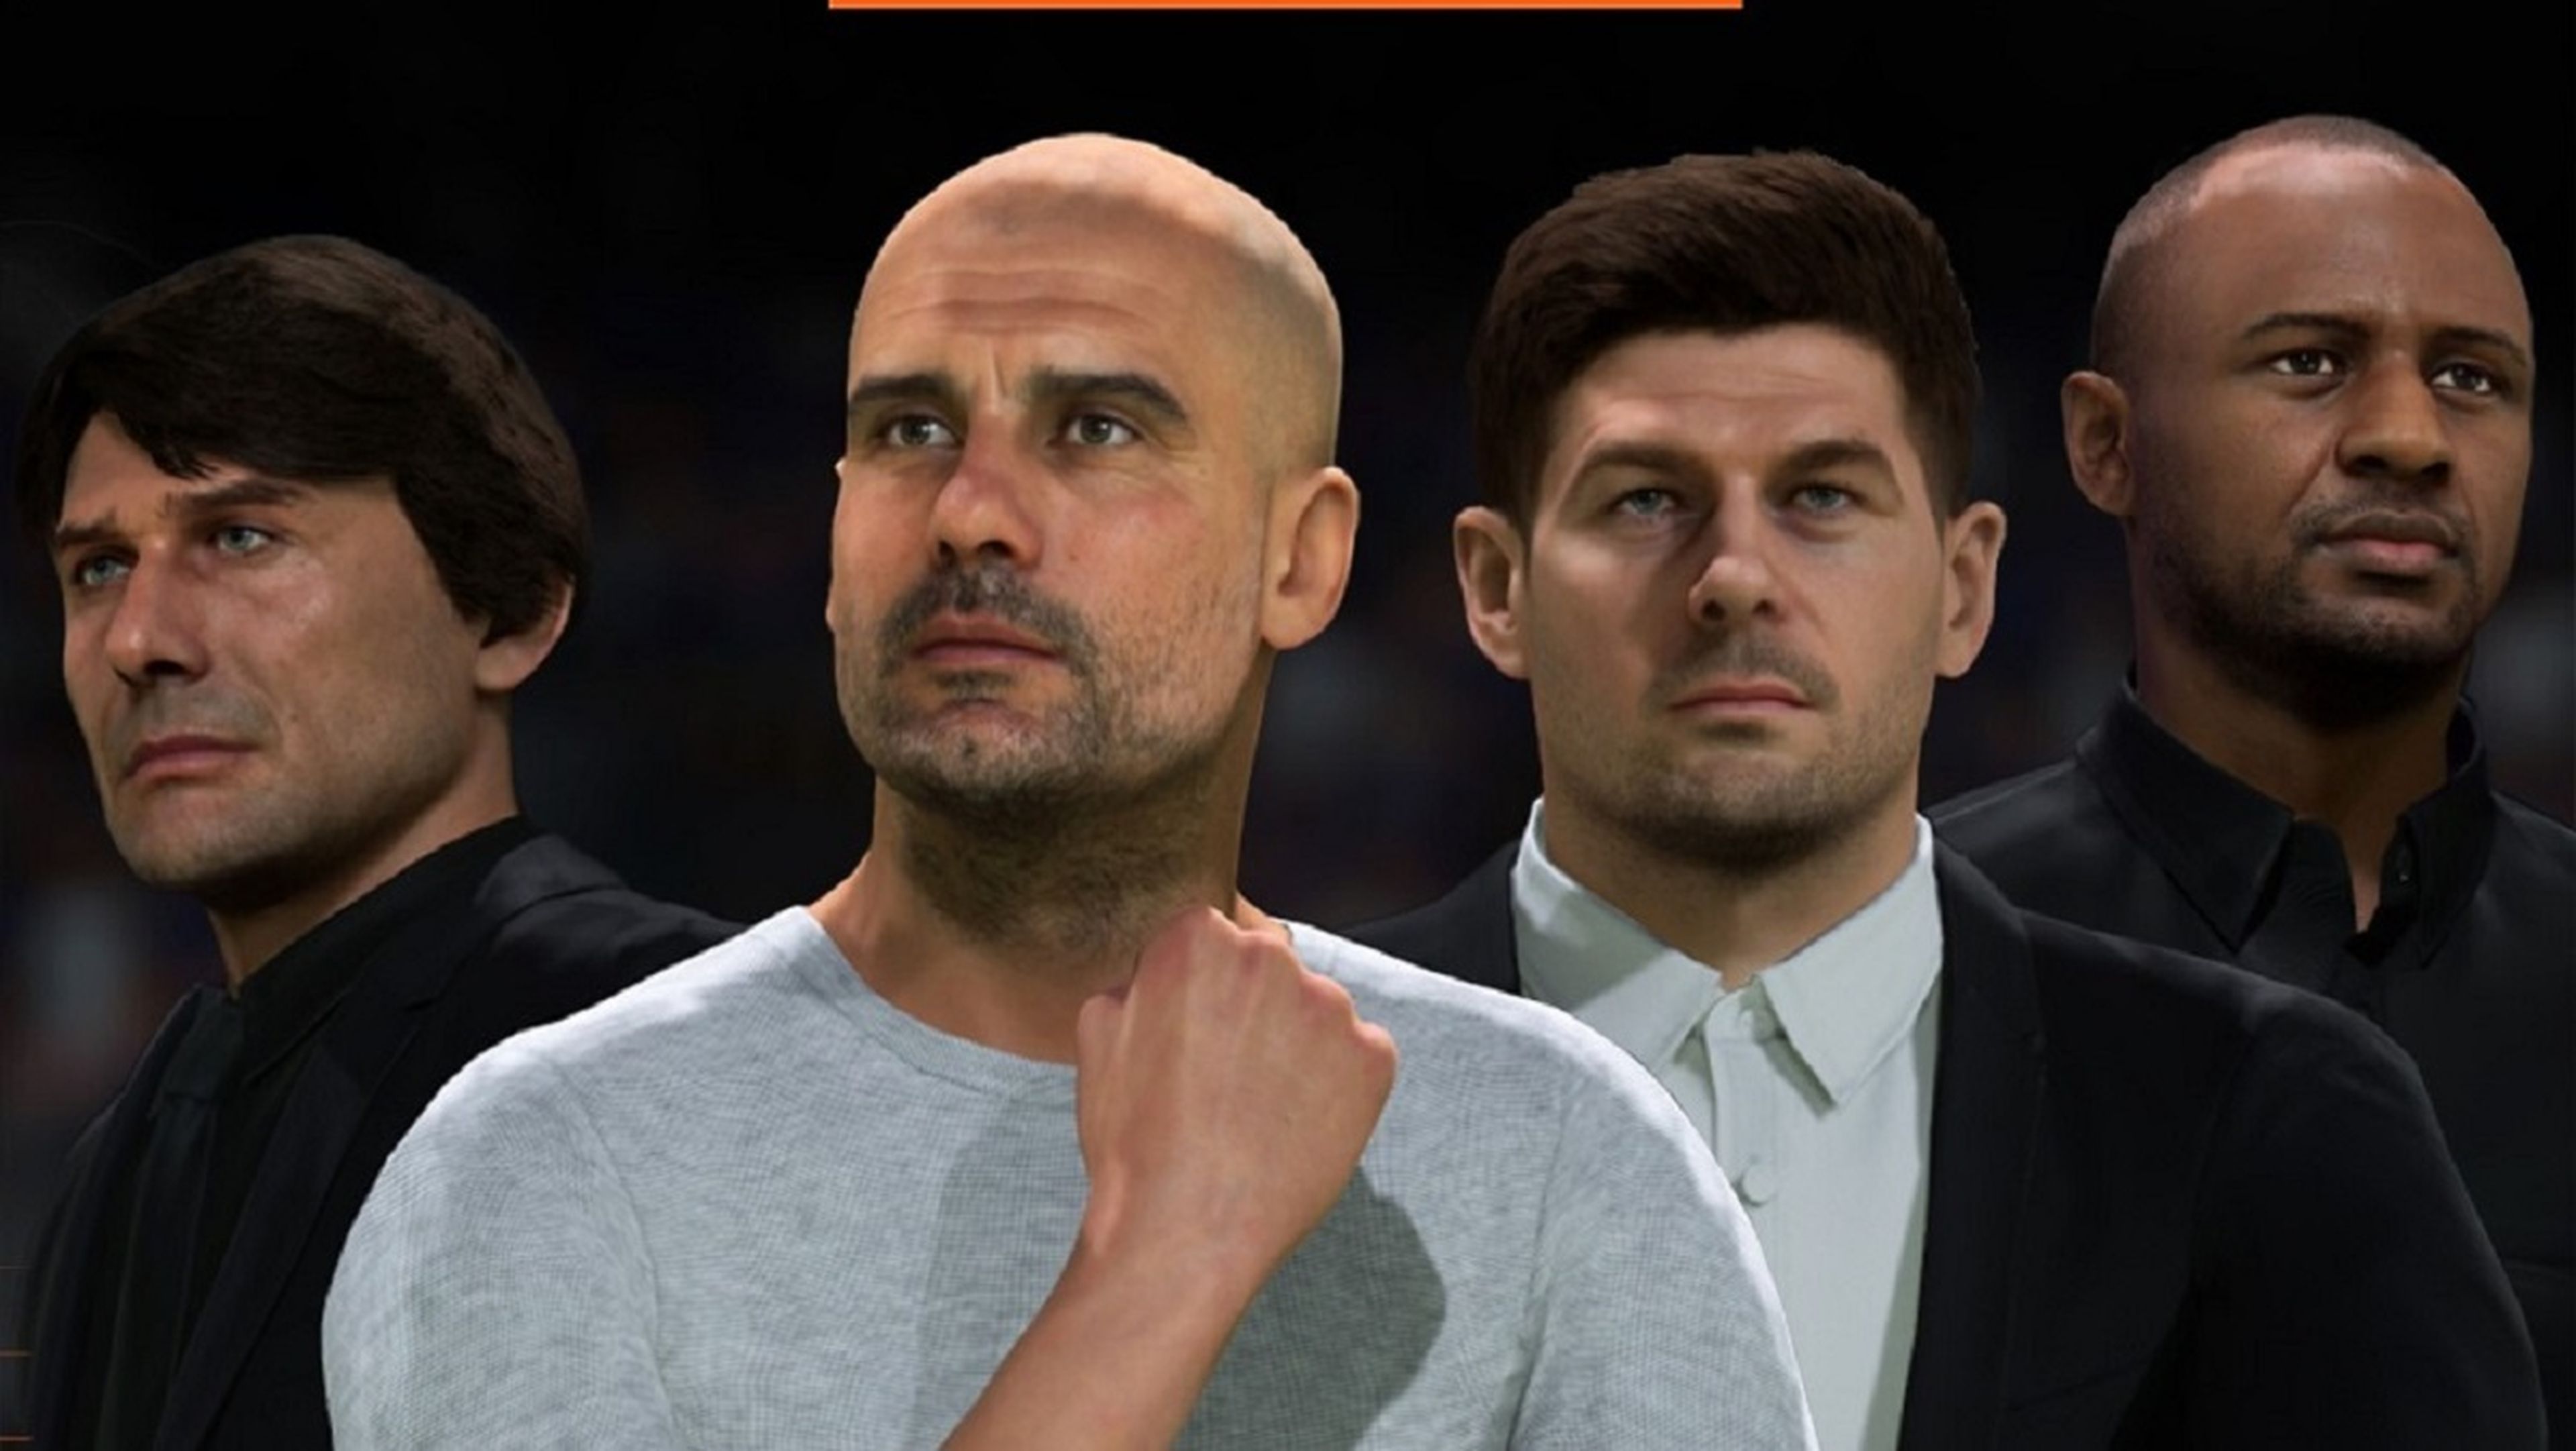 El modo Carrera de FIFA 23 permitirá usar a entrenadores reales y tendrá más personalidad